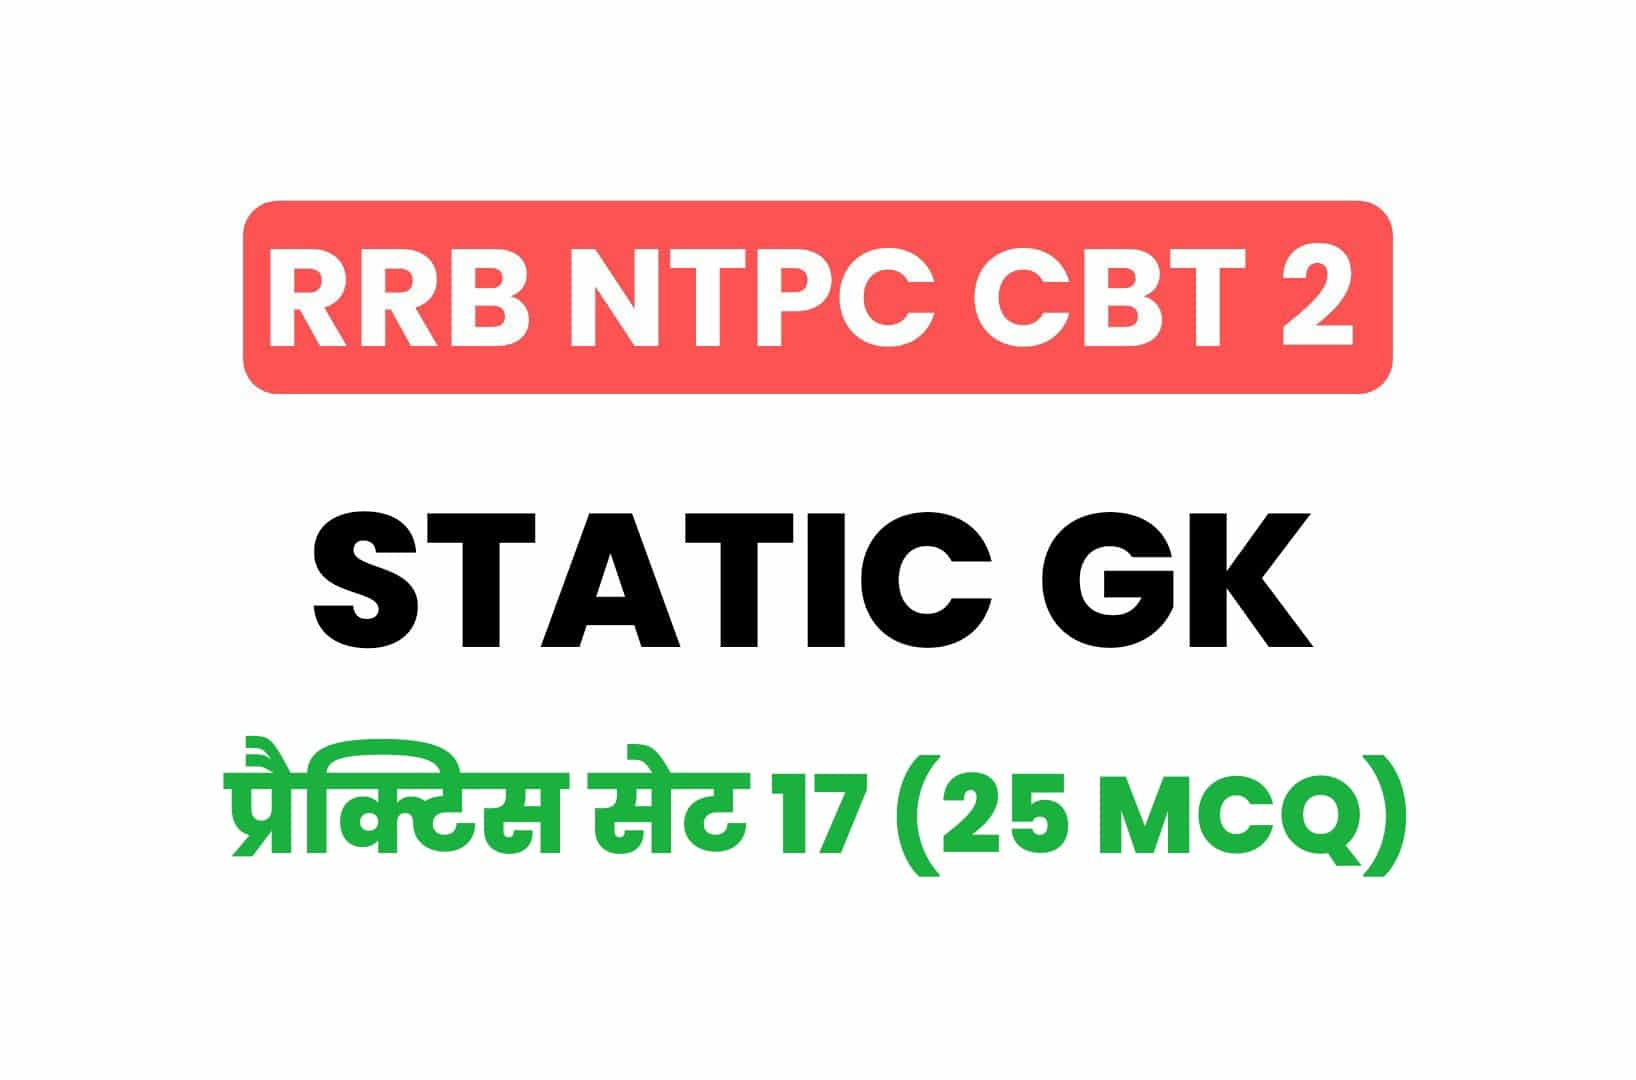 RRB NTPC CBT 2 Static GK प्रैक्टिस सेट 17: परीक्षा में पूछें गये महत्वपूर्ण प्रश्न, अवश्य पढ़ें